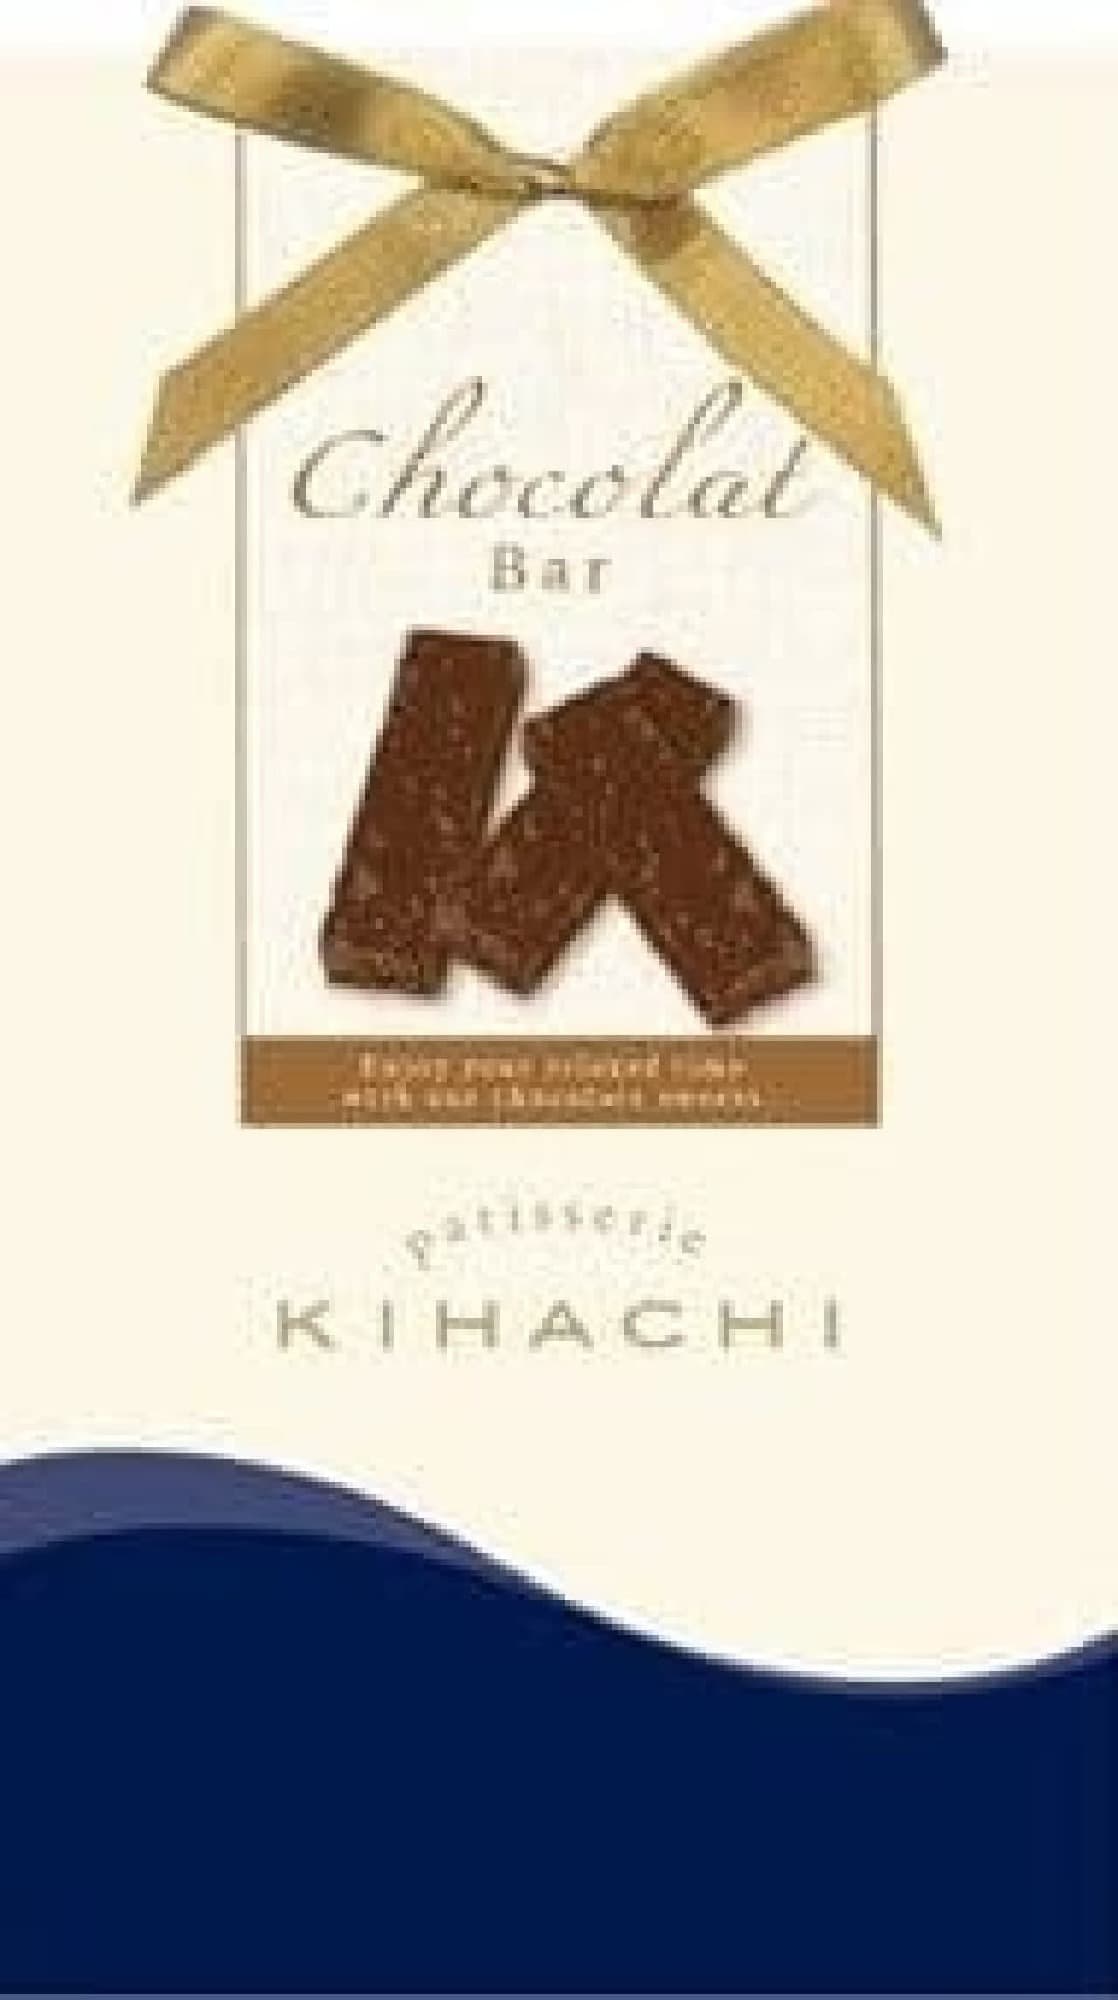 FamilyMart "KIHACHI Chocolat Bar